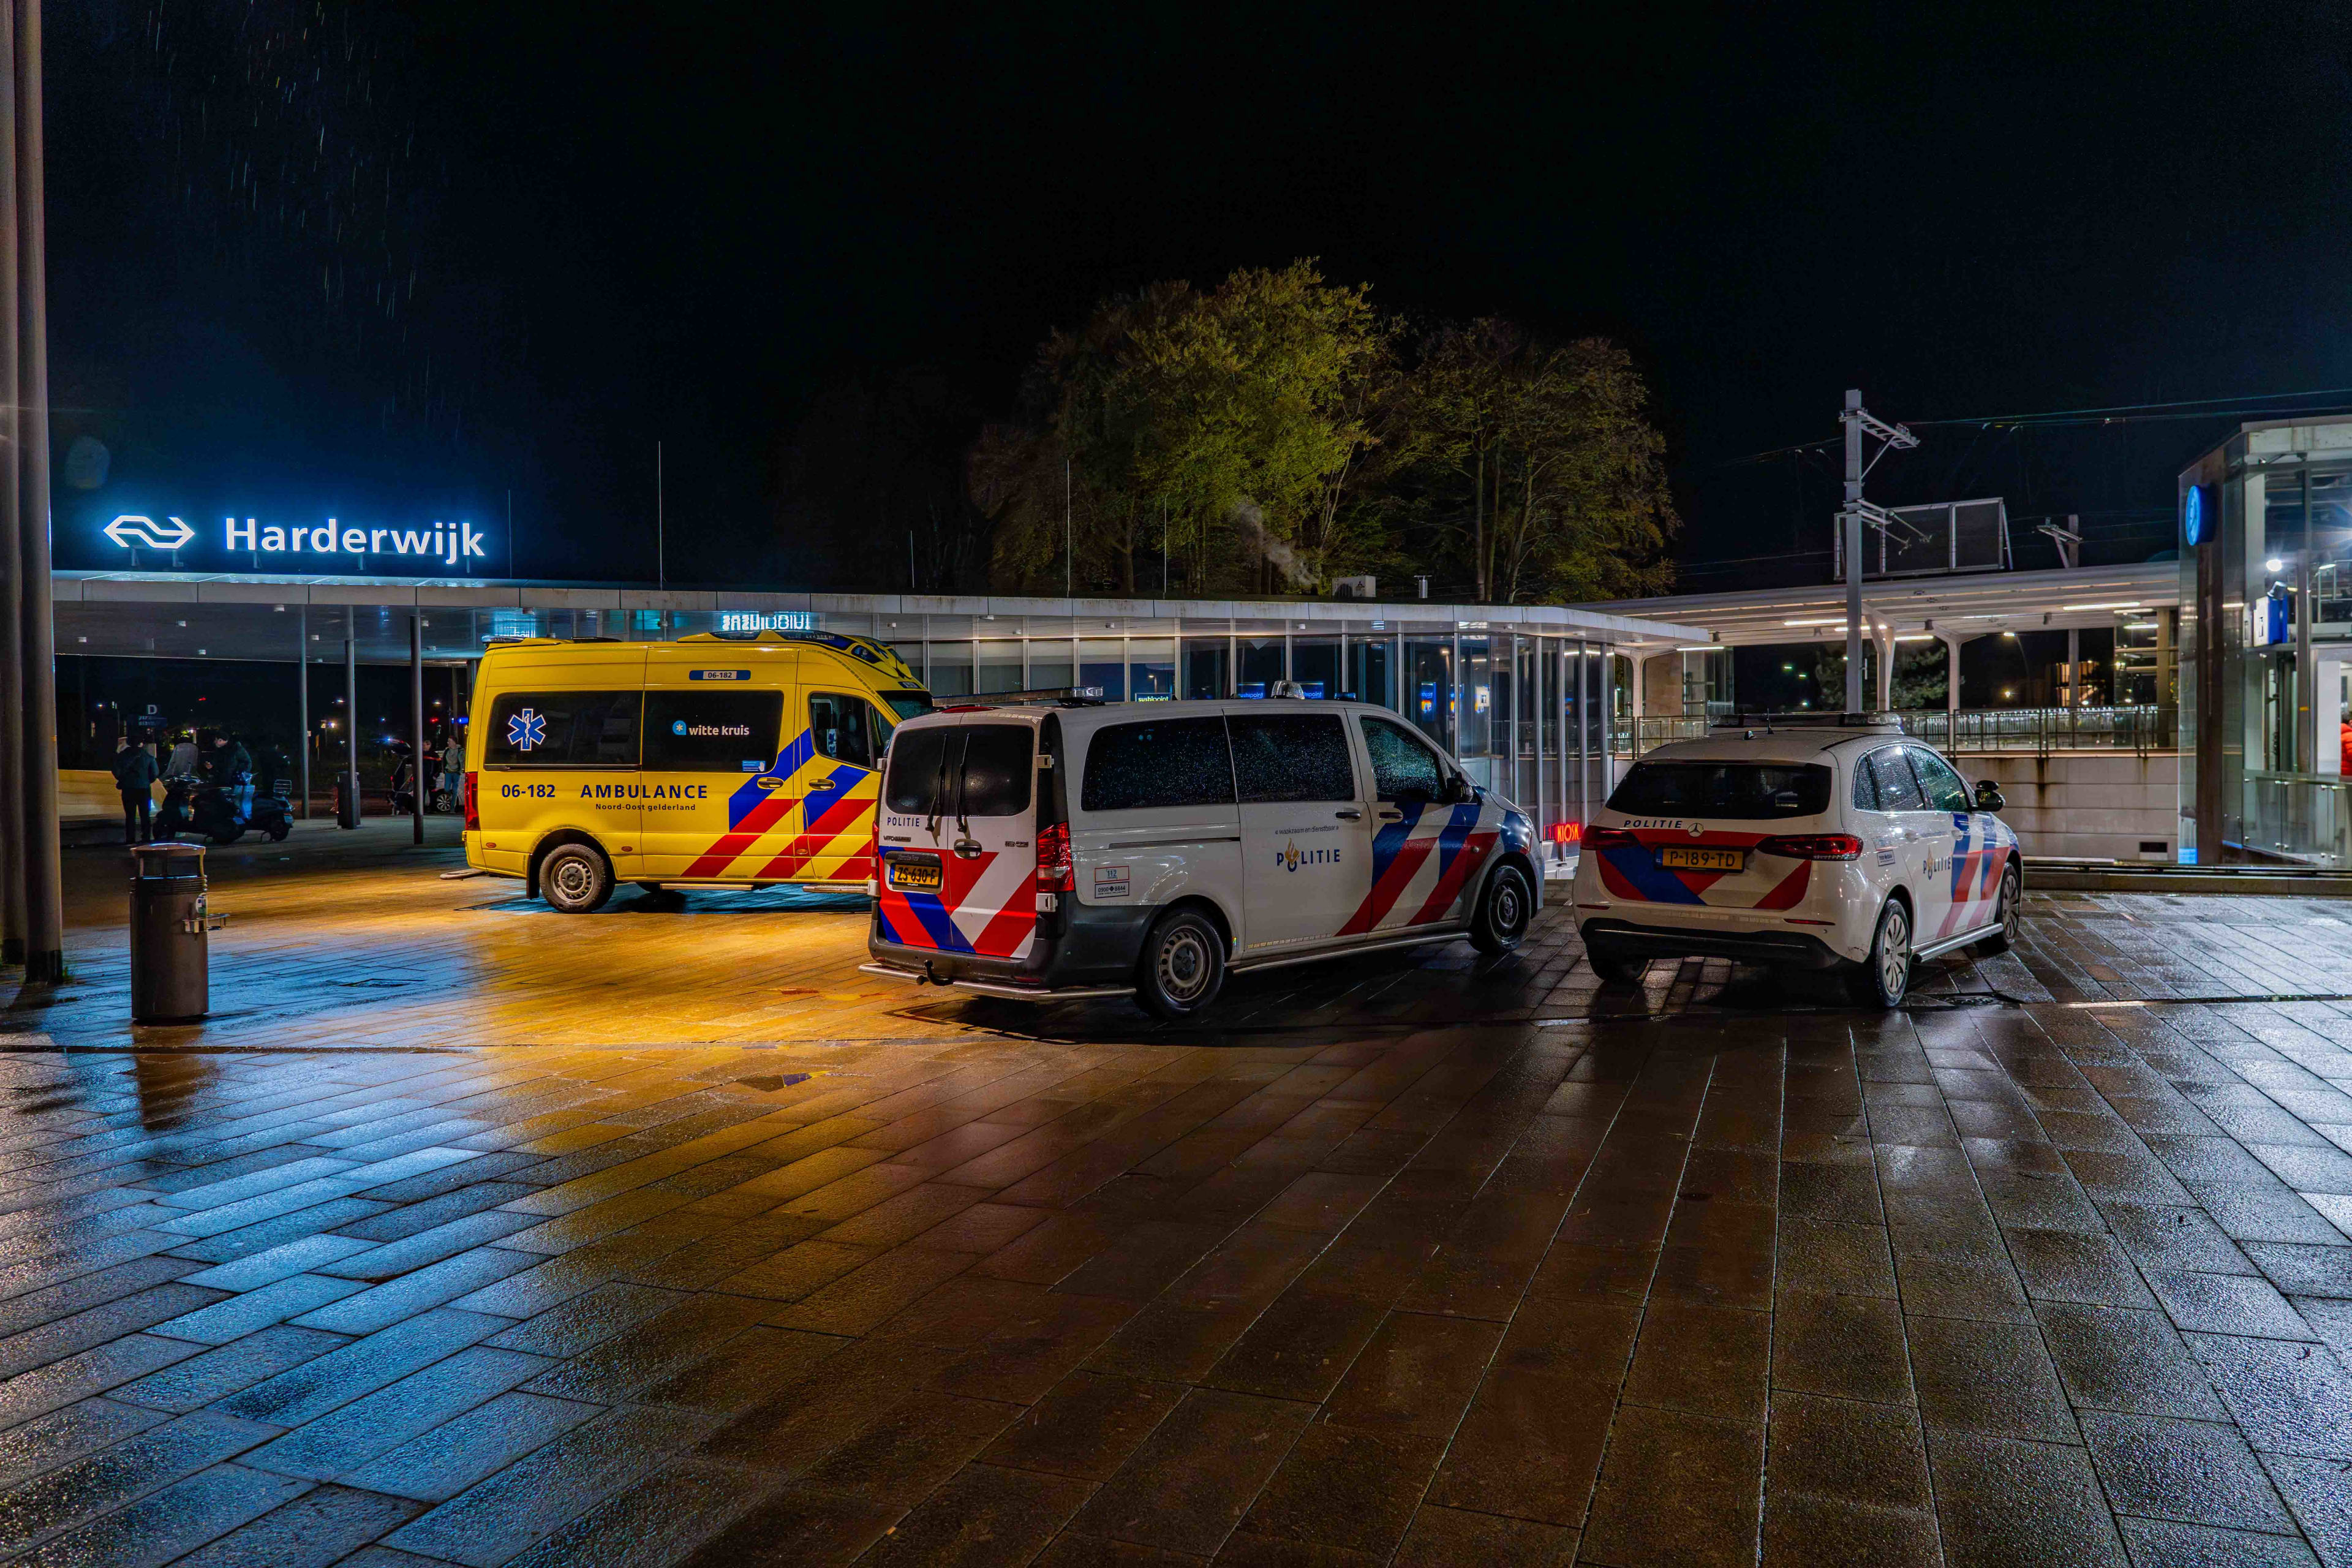 Man neergestoken op station Harderwijk, politie pakt vier jonge verdachten op